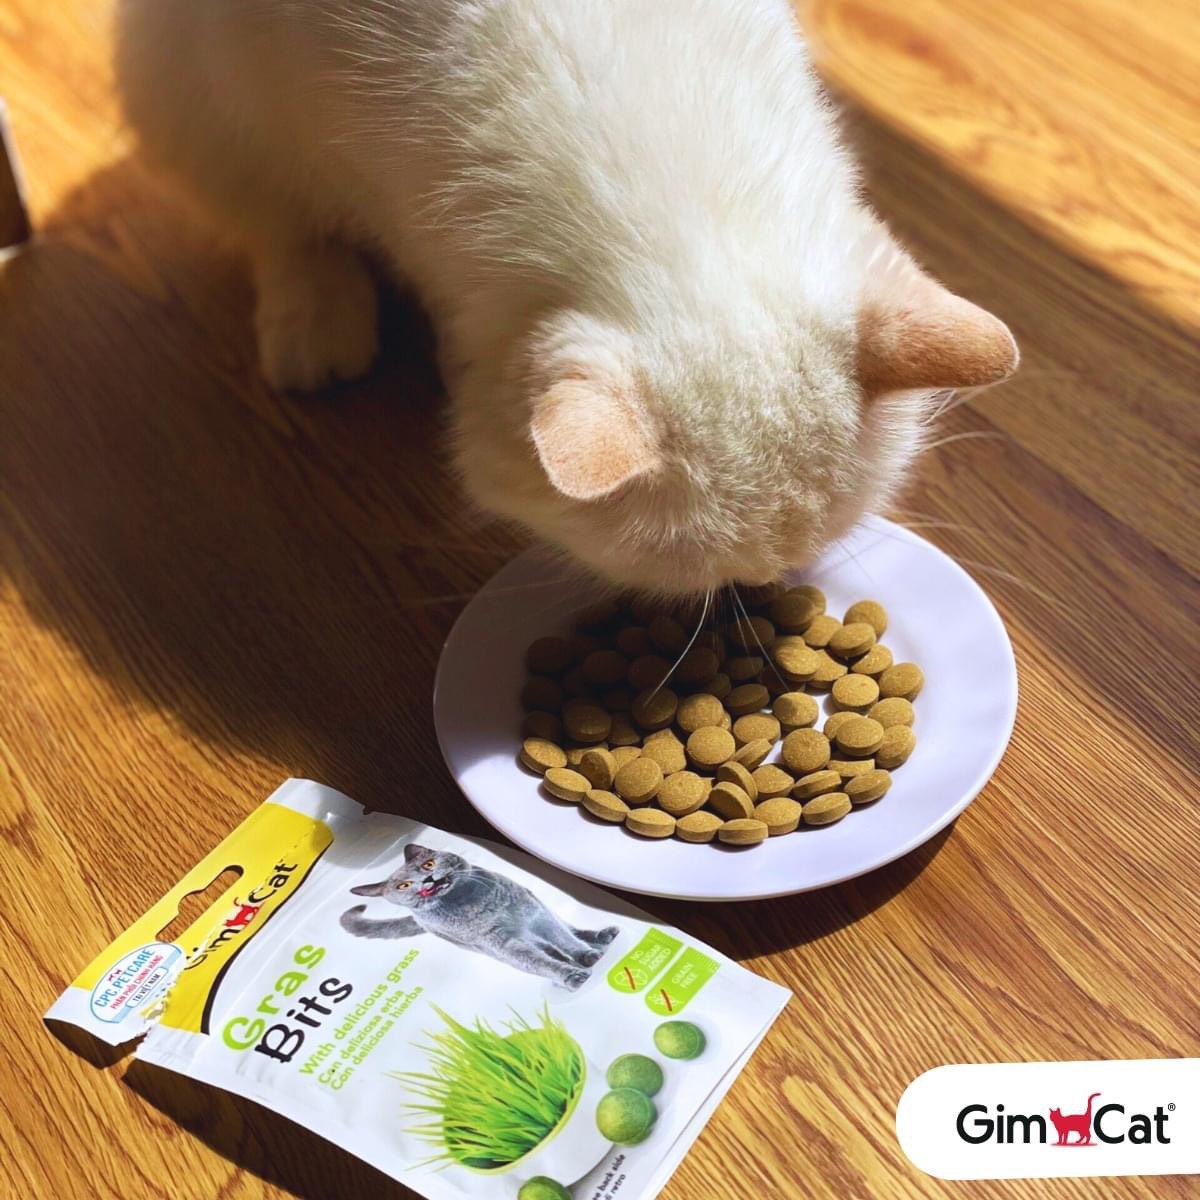 Bánh thưởng Gimcat Tabs /Snack Gimcat dạng viên tròn ngừa búi lông,mượt lông da,tăng đề kháng,giảm stress cho mèo,hỗ trợ tiêu hóa